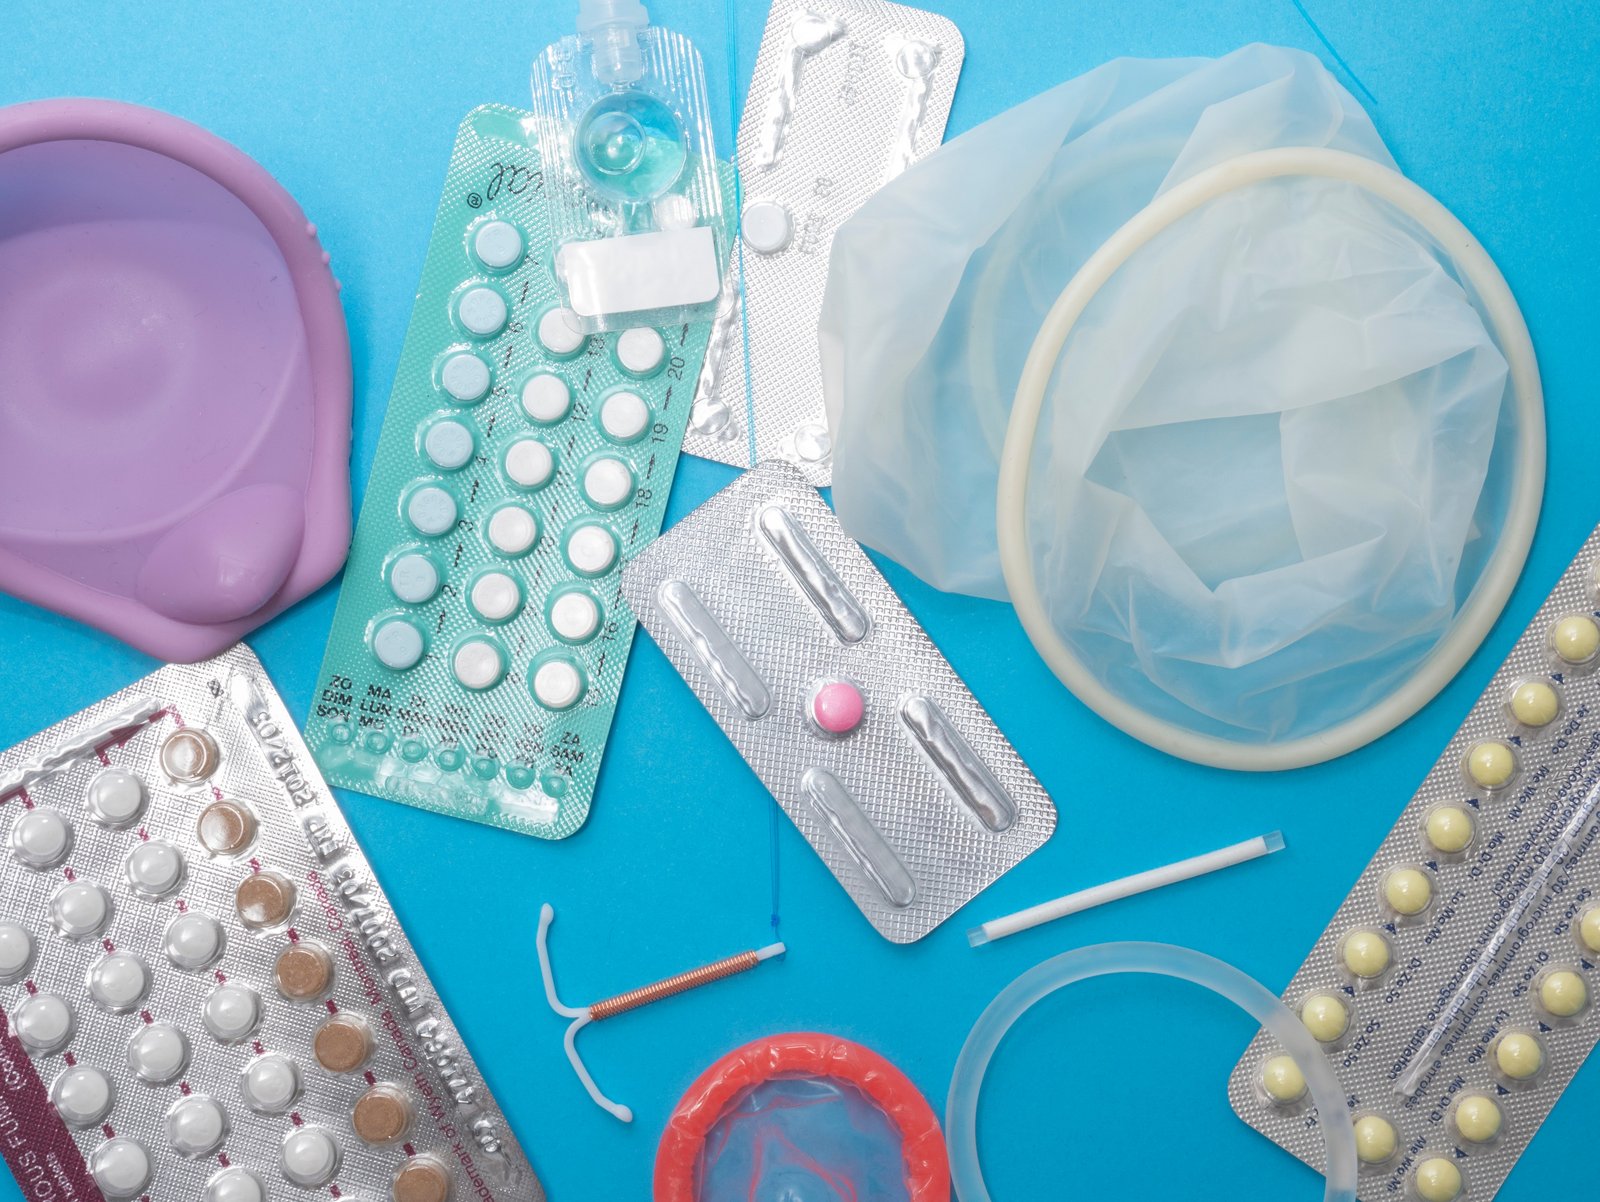 Голубой фон, на котором изображены различные гормональные и безгормональные контрацептивы для женщин